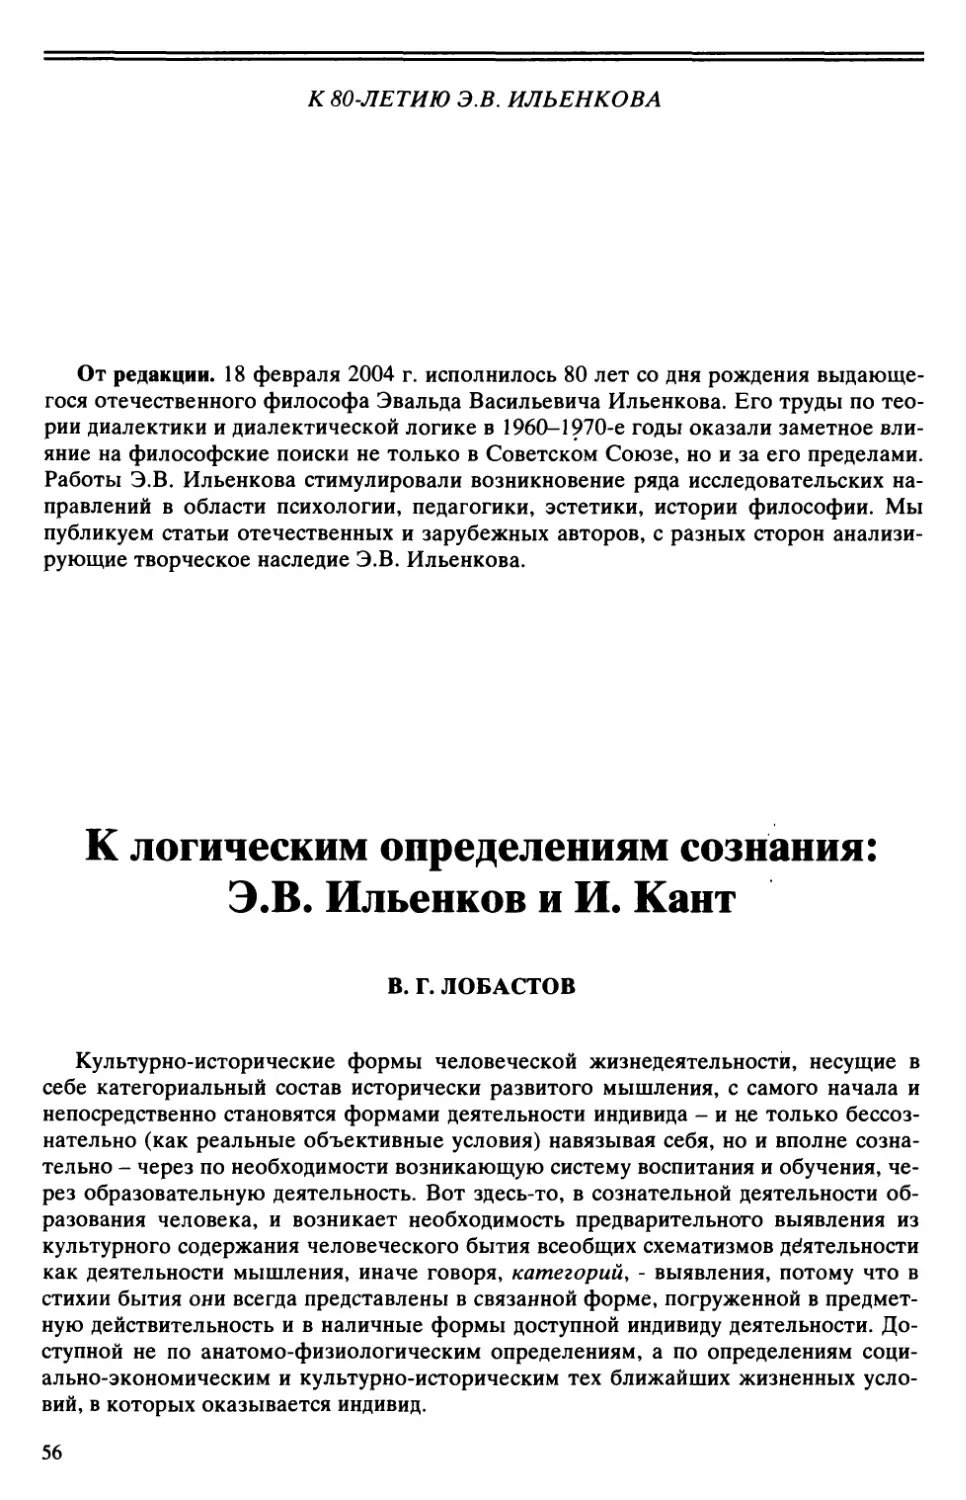 В.Г. Лобастое - К логическим определениям сознания: Э.В. Ильенков и И. Кант